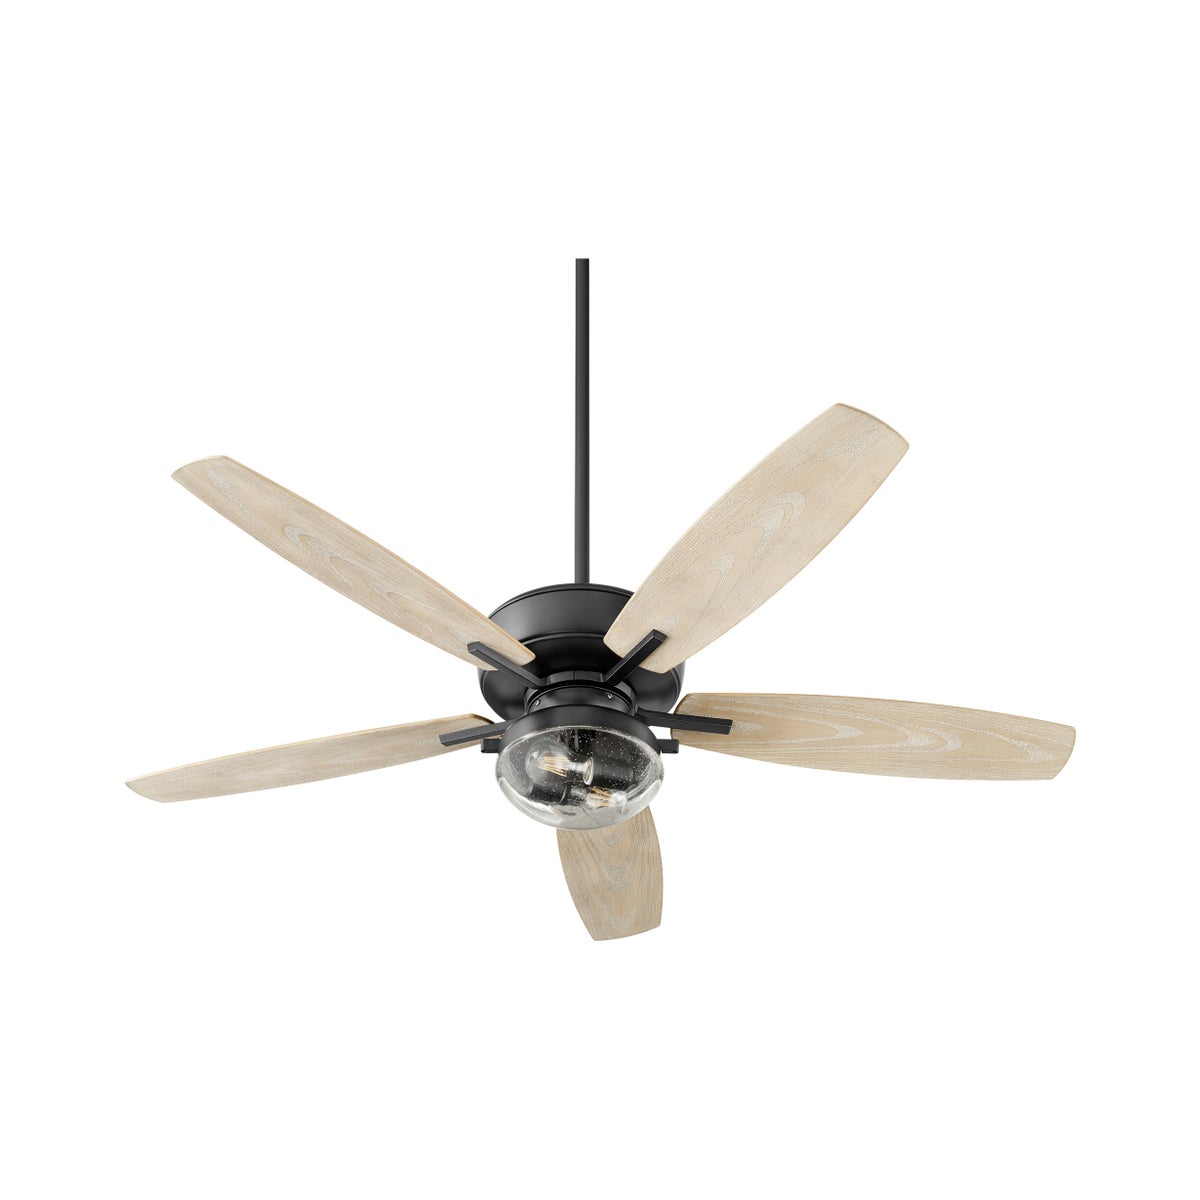 Breeze Patio 52-in Black Indoor/Outdoor Ceiling Fan (5-Blade)